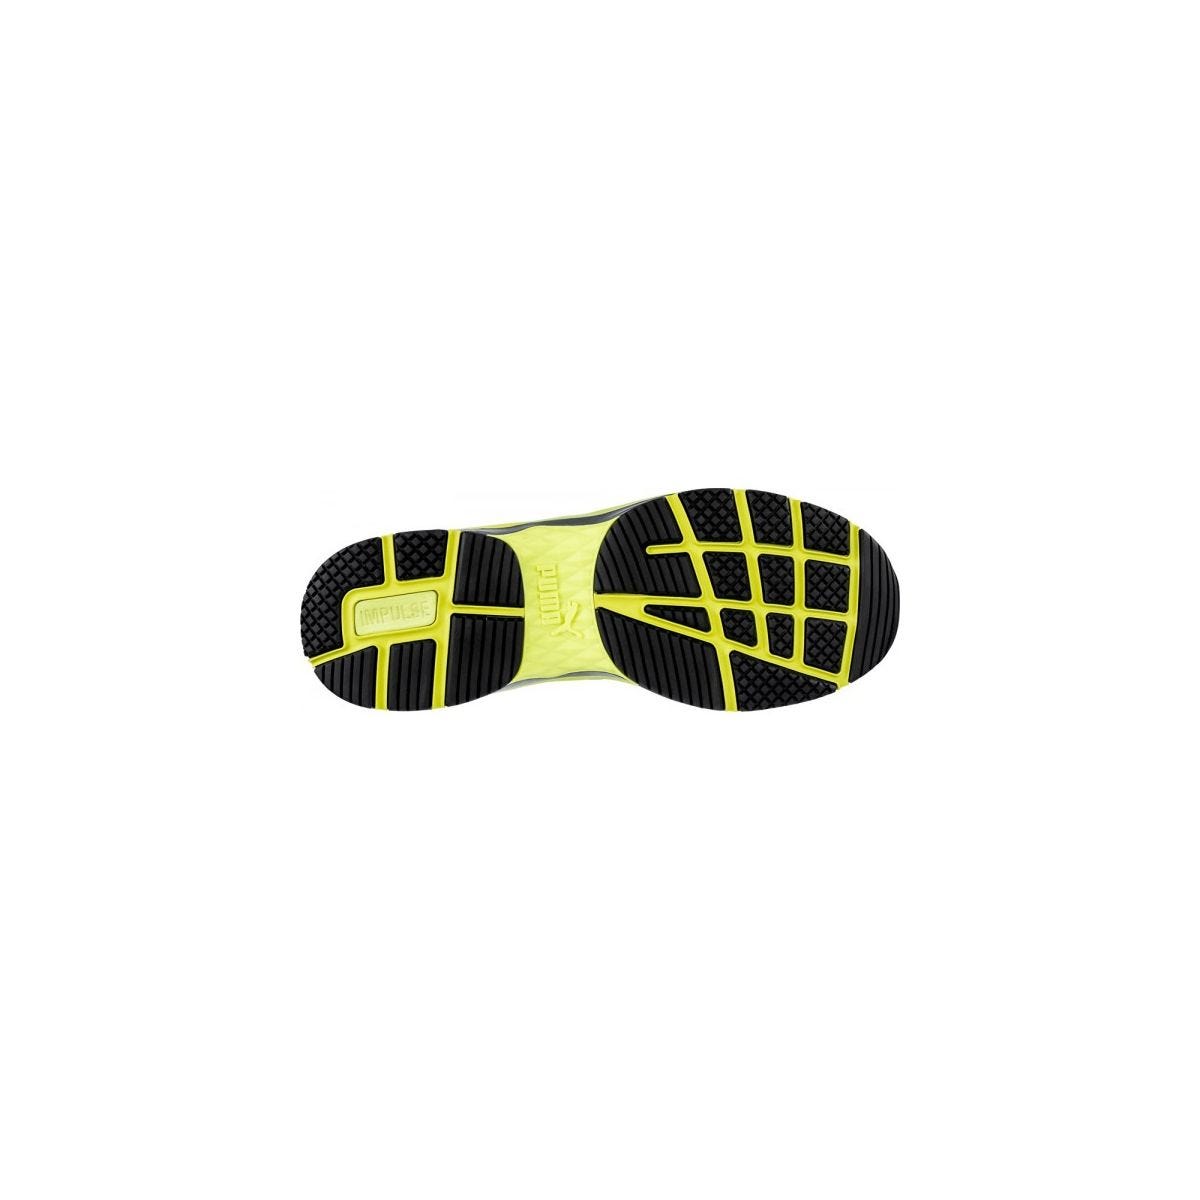 Chaussures de sécurité Velocity 2.0 YELLOW MID S3 - Puma - Taille 46 4